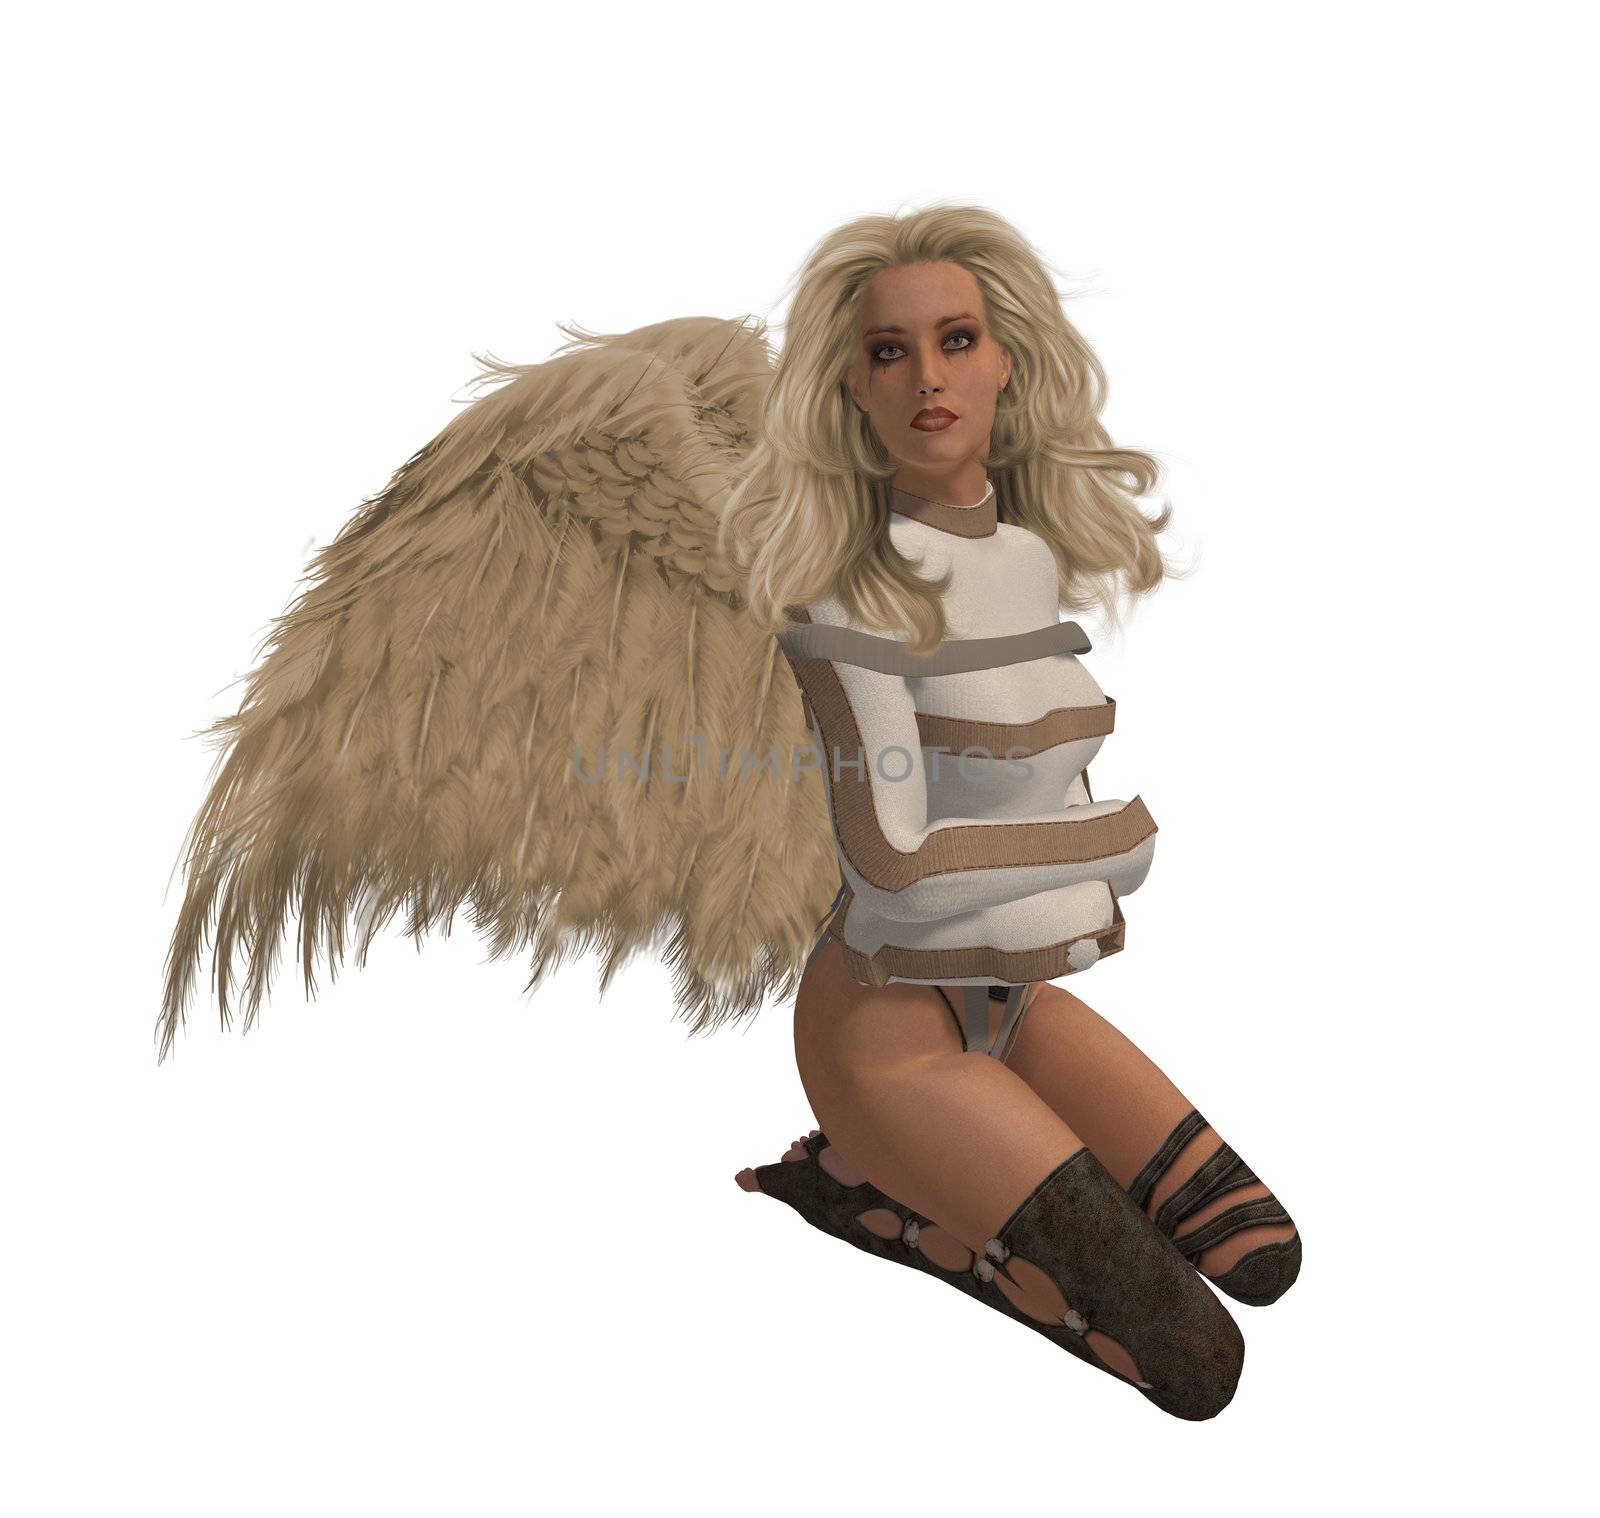 Blonde Rebel Angel by kathygold